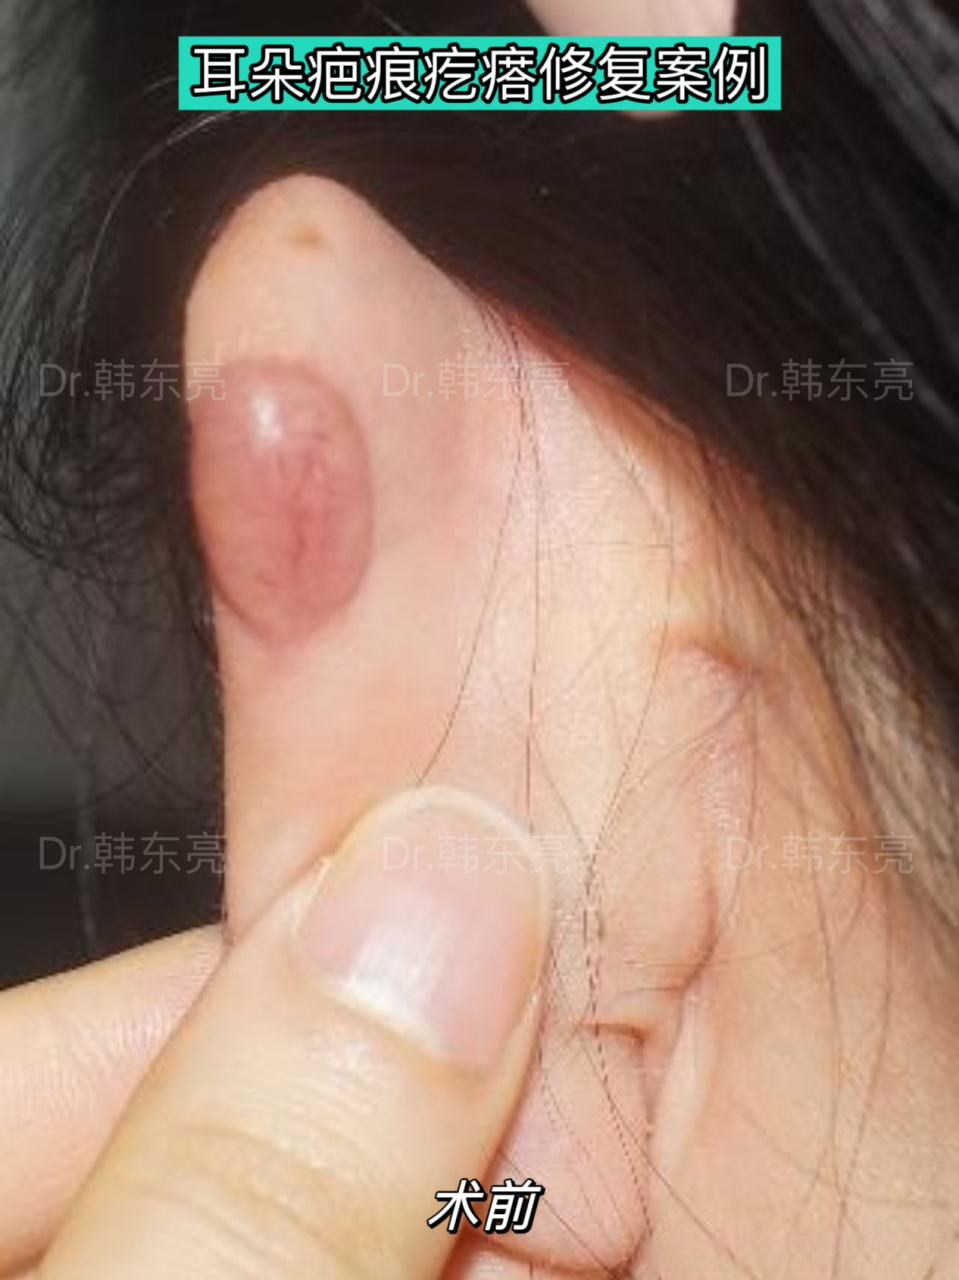 【耳朵疤痕疙瘩修复案例】 及早对耳部疤痕疙瘩采取手术切除的综合